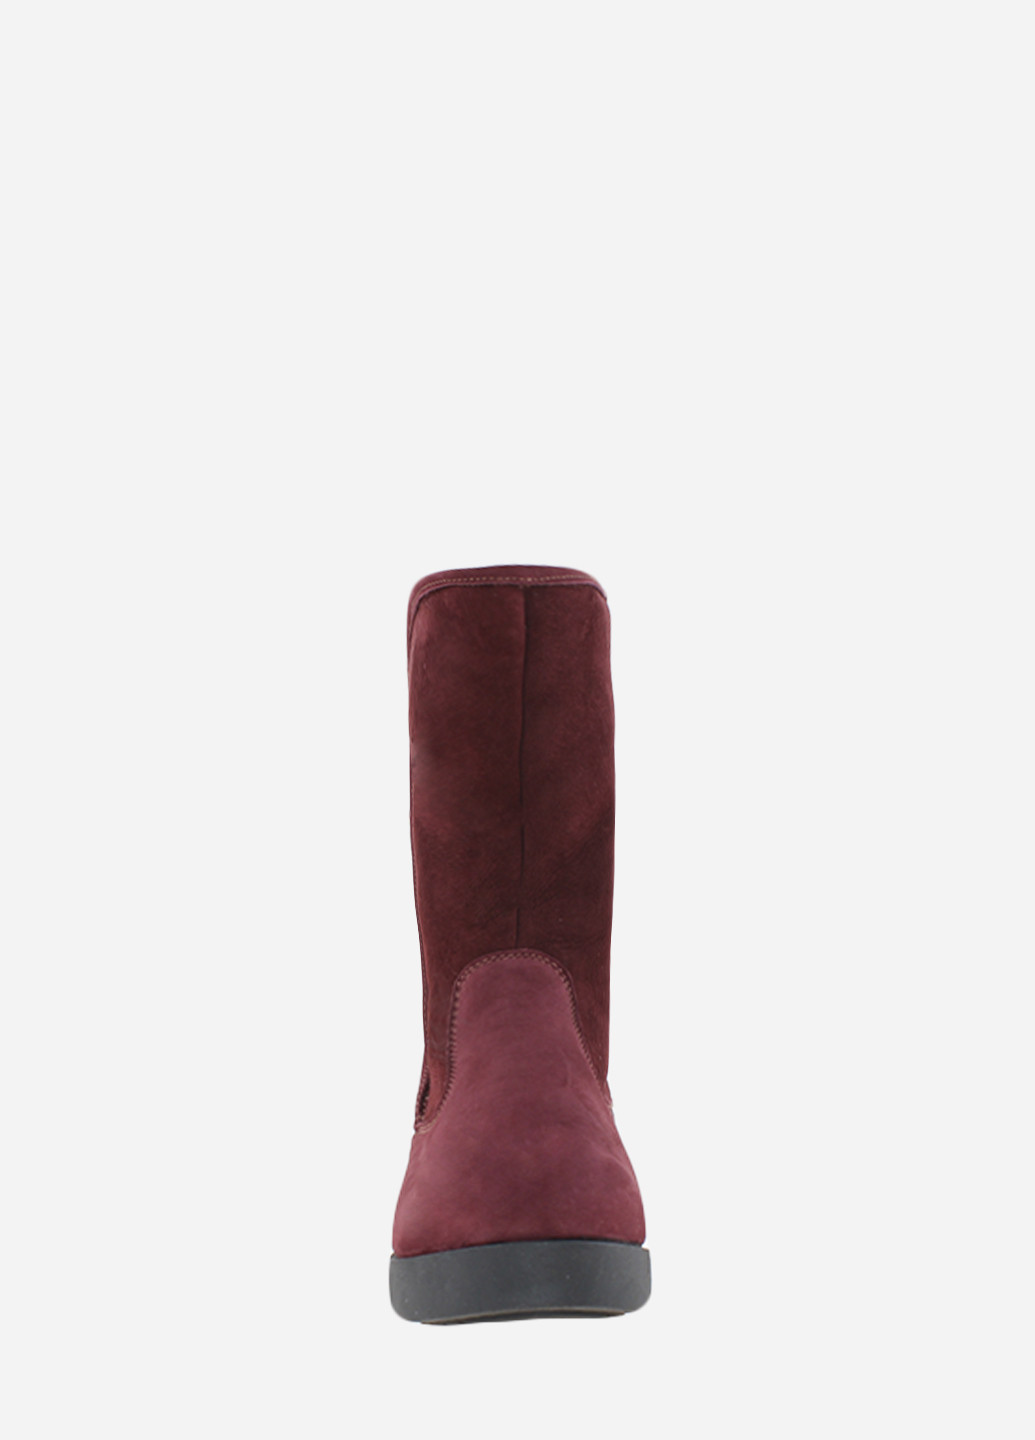 Зимние ботинки rk707 бордовый Kostas из натуральной замши, из натурального нубука